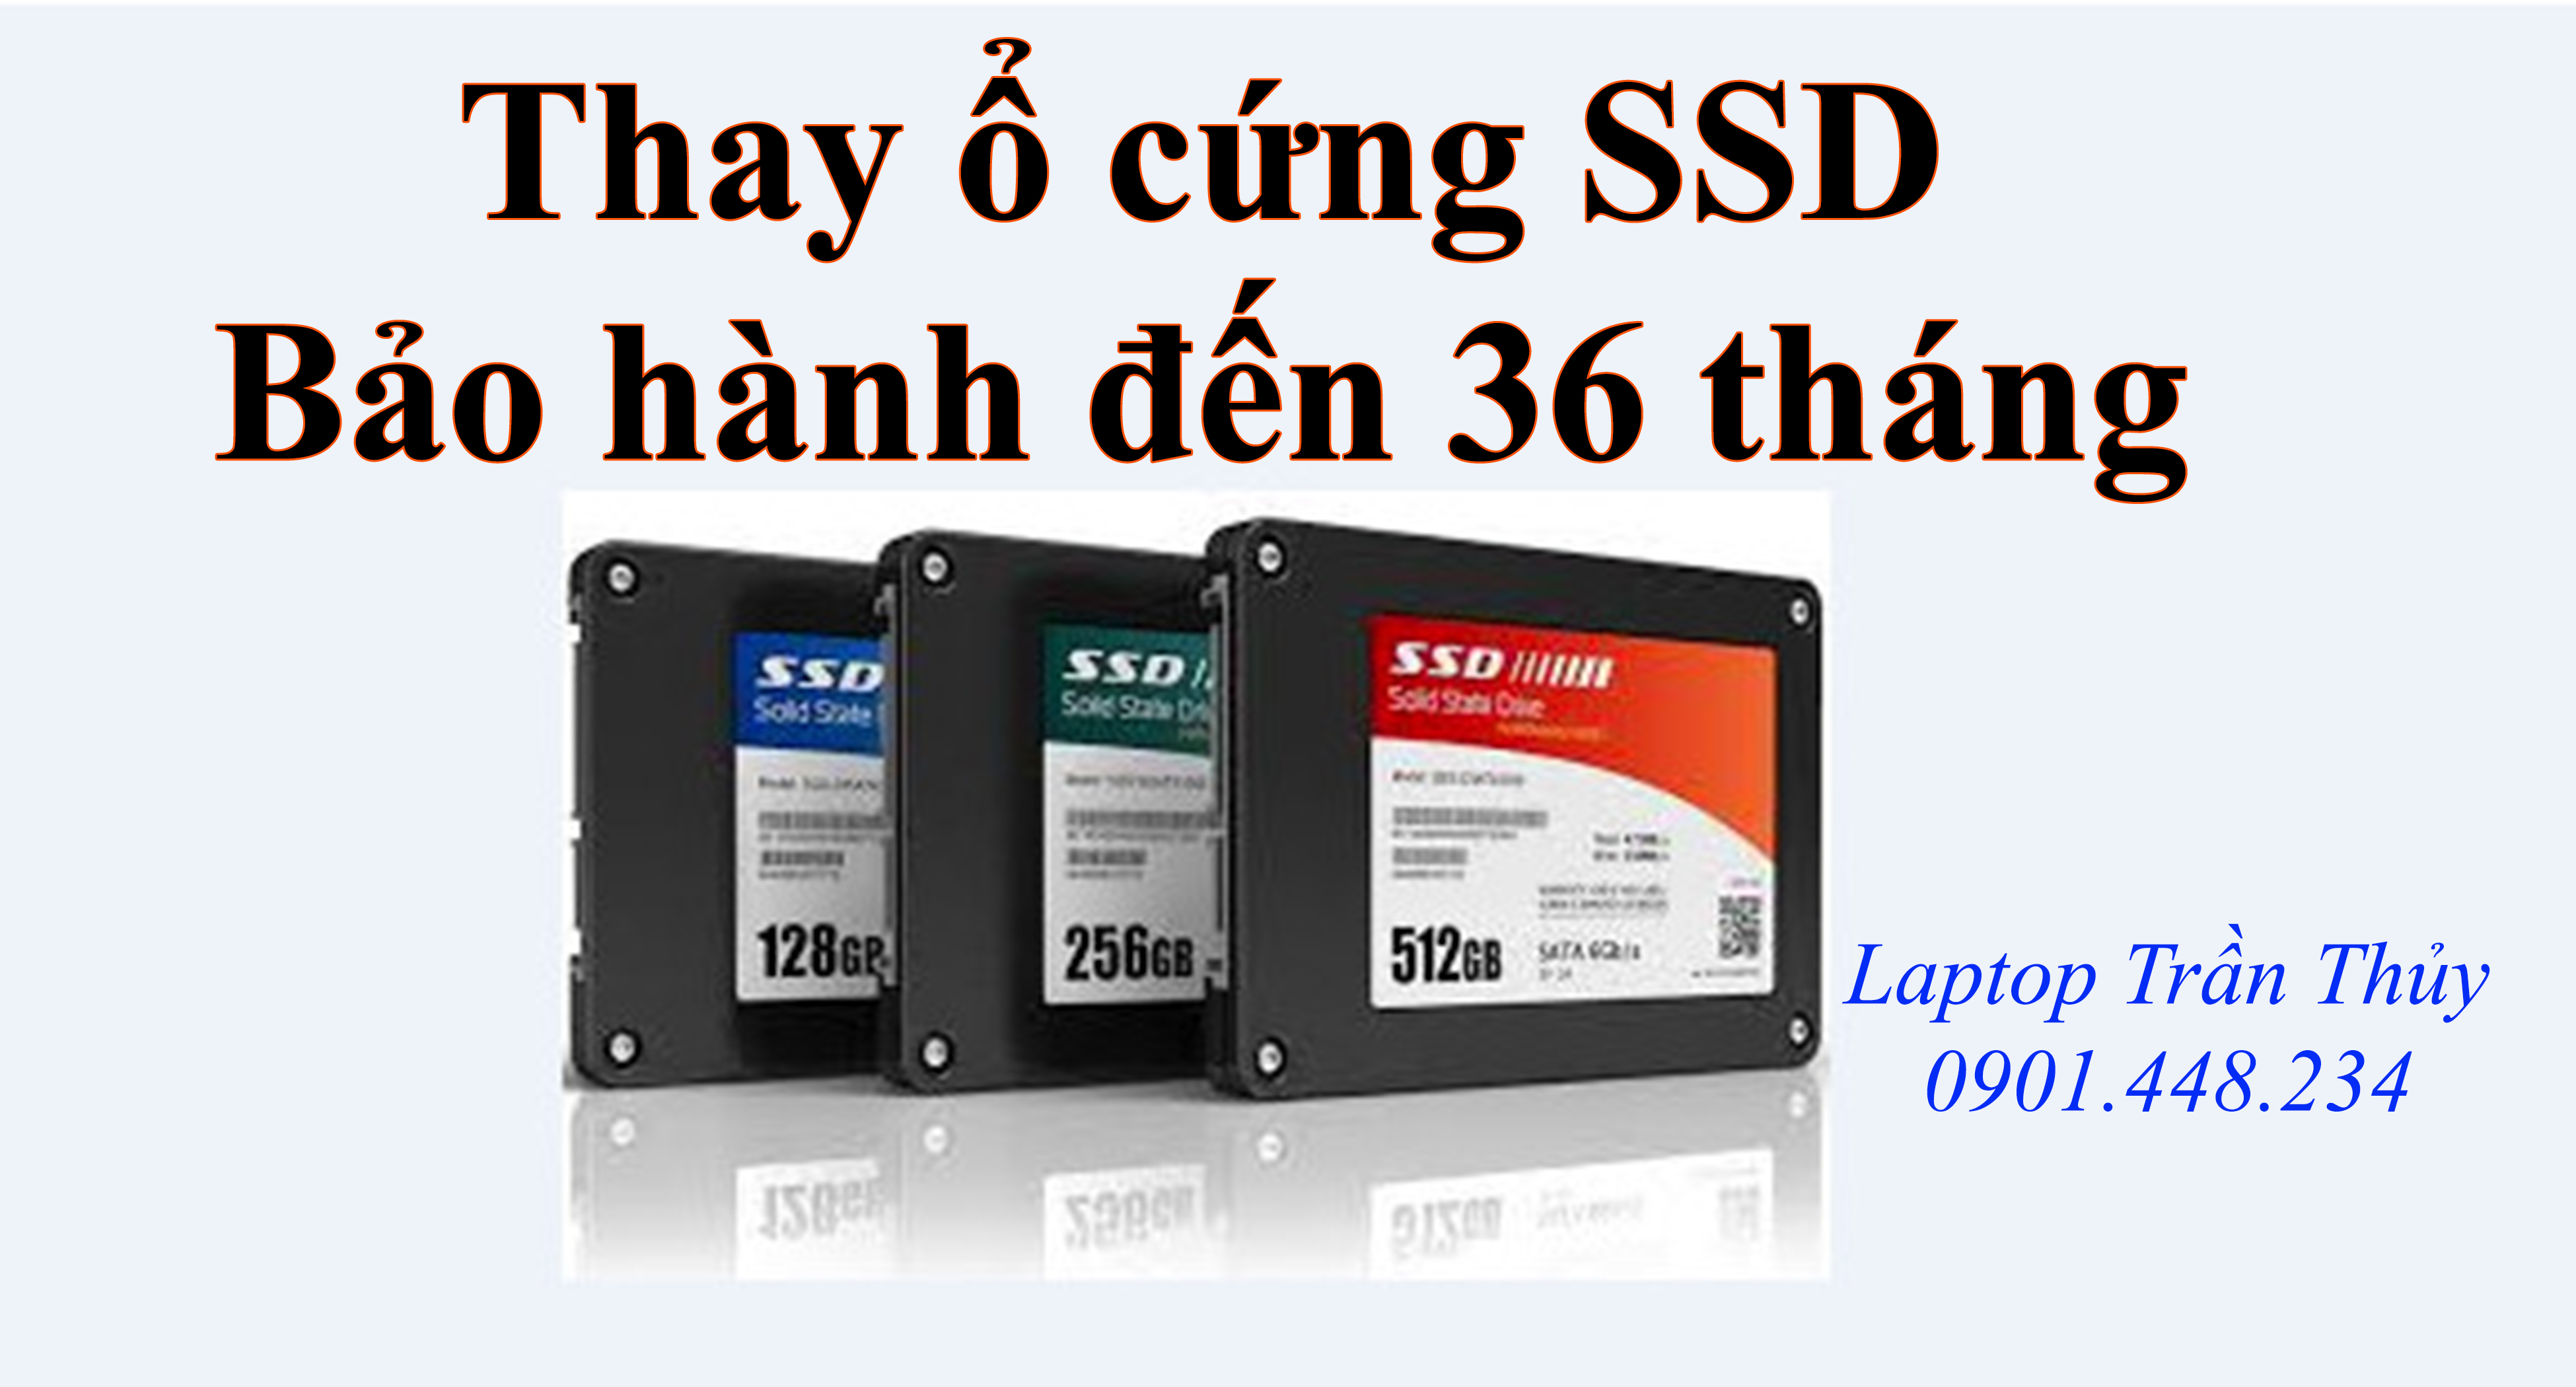 Nâng cấp ổ cứng SSD giá rẻ HCM